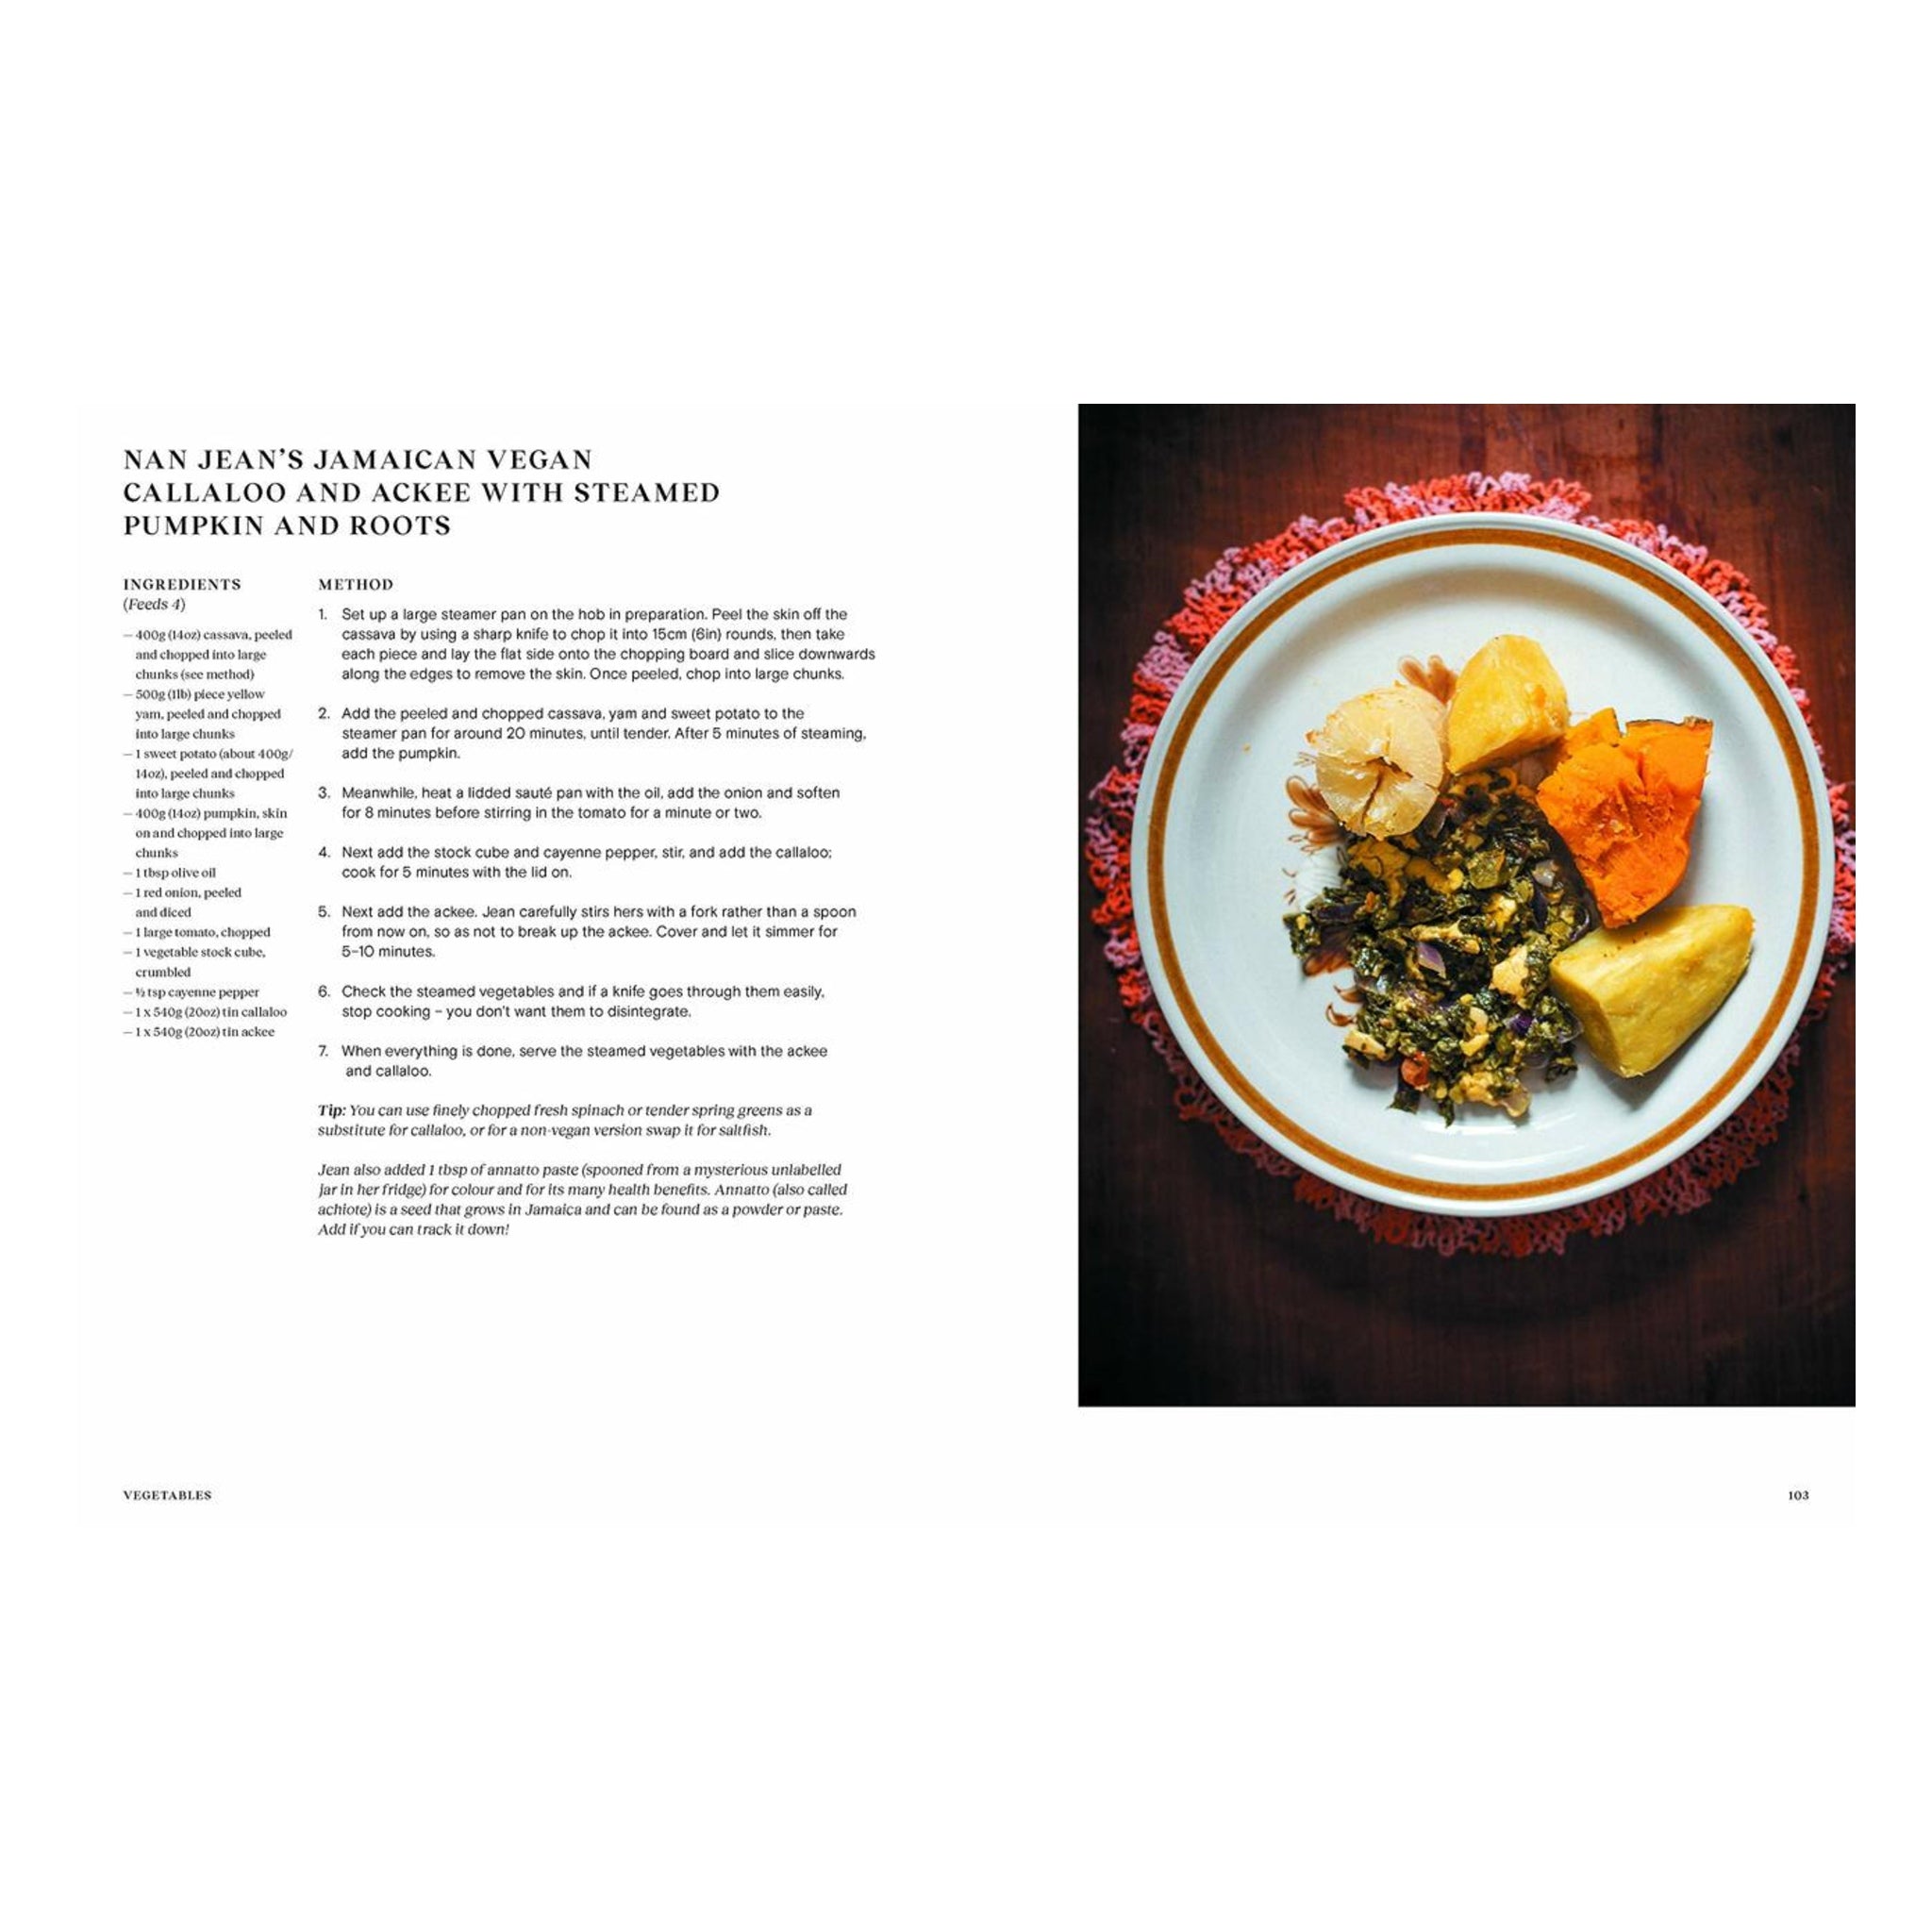 Uddrag af kogebogen Grand Dishes af Lupton & Miari, side 102-103, hos Oliviers & Co